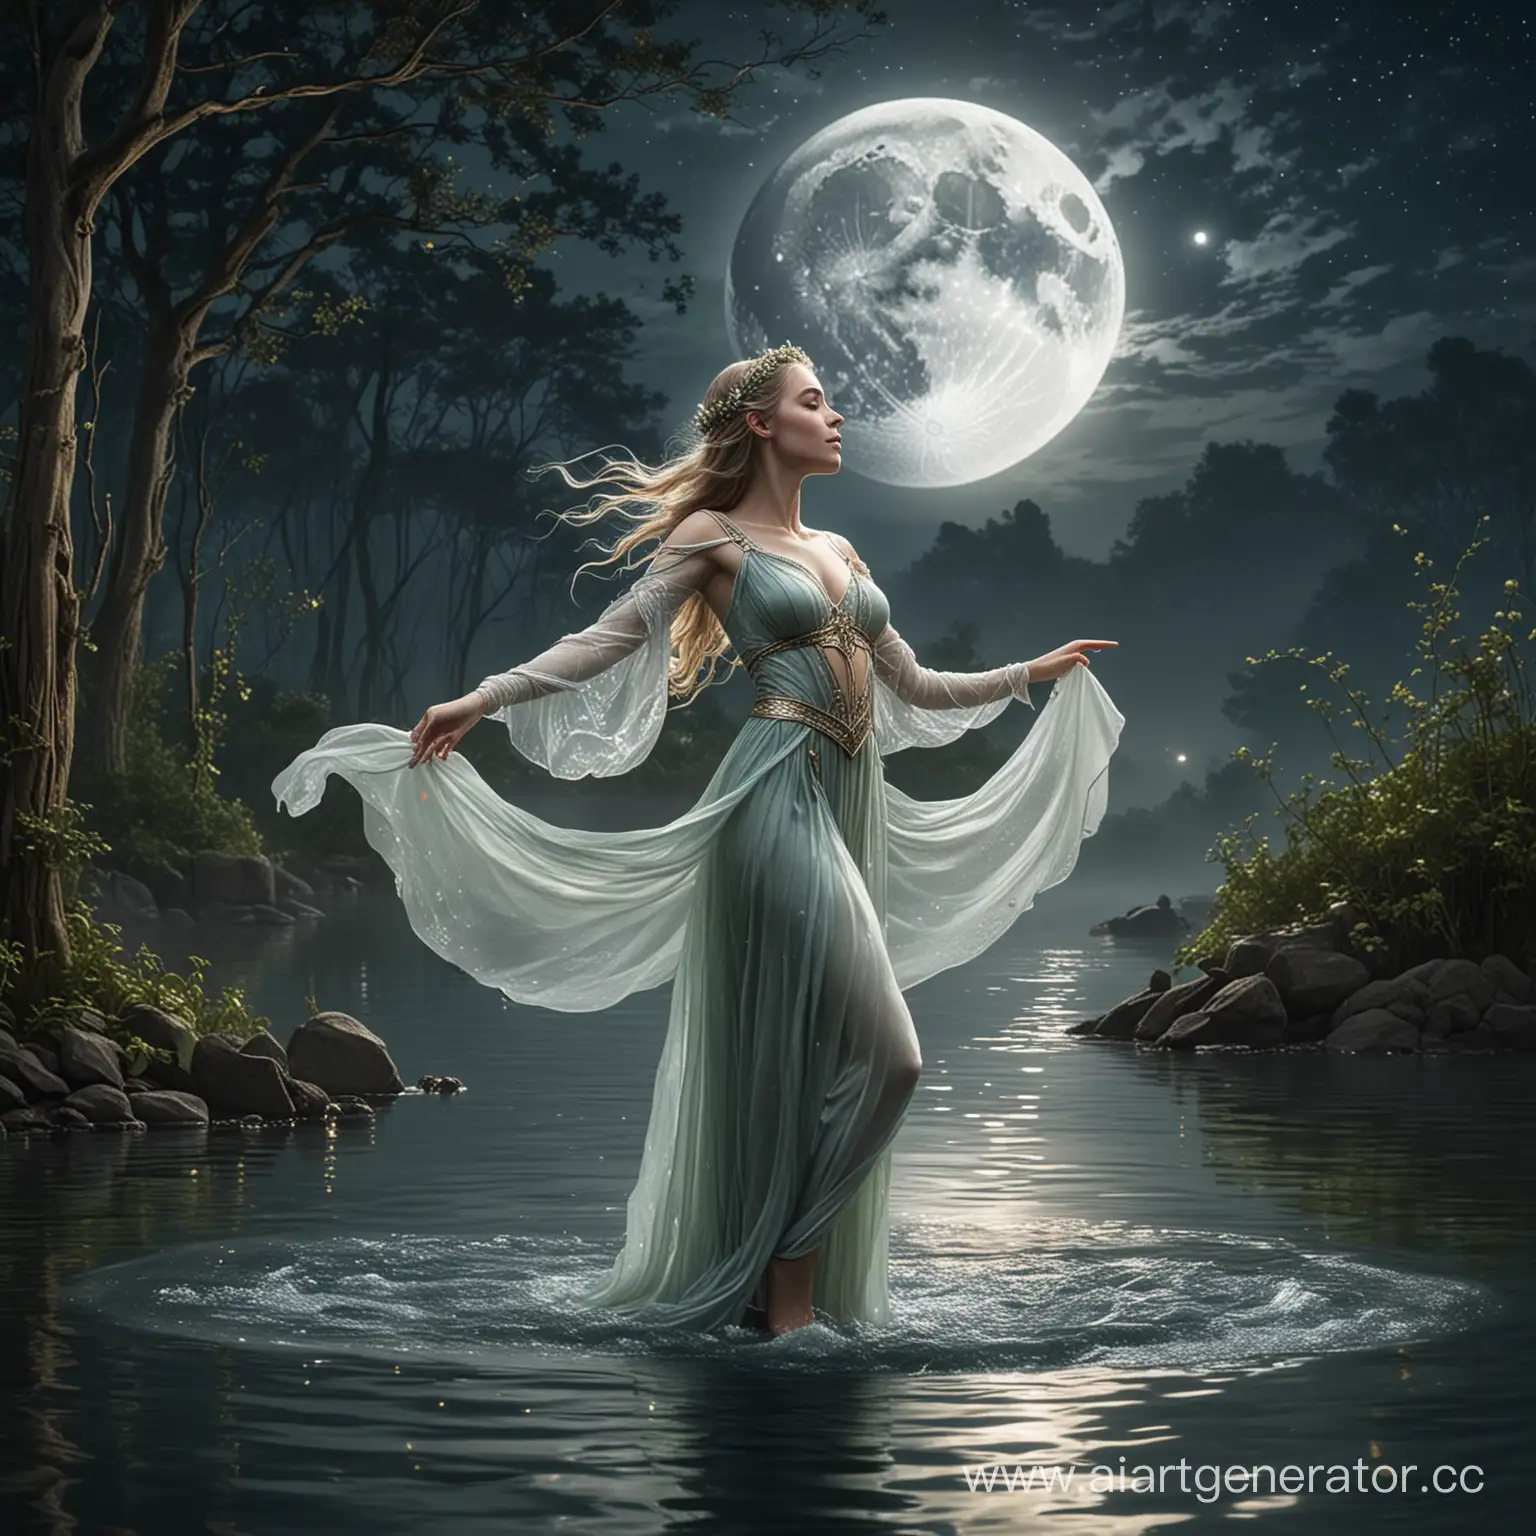 Graceful-Elven-Princess-Dancing-Under-Moonlight-on-Water